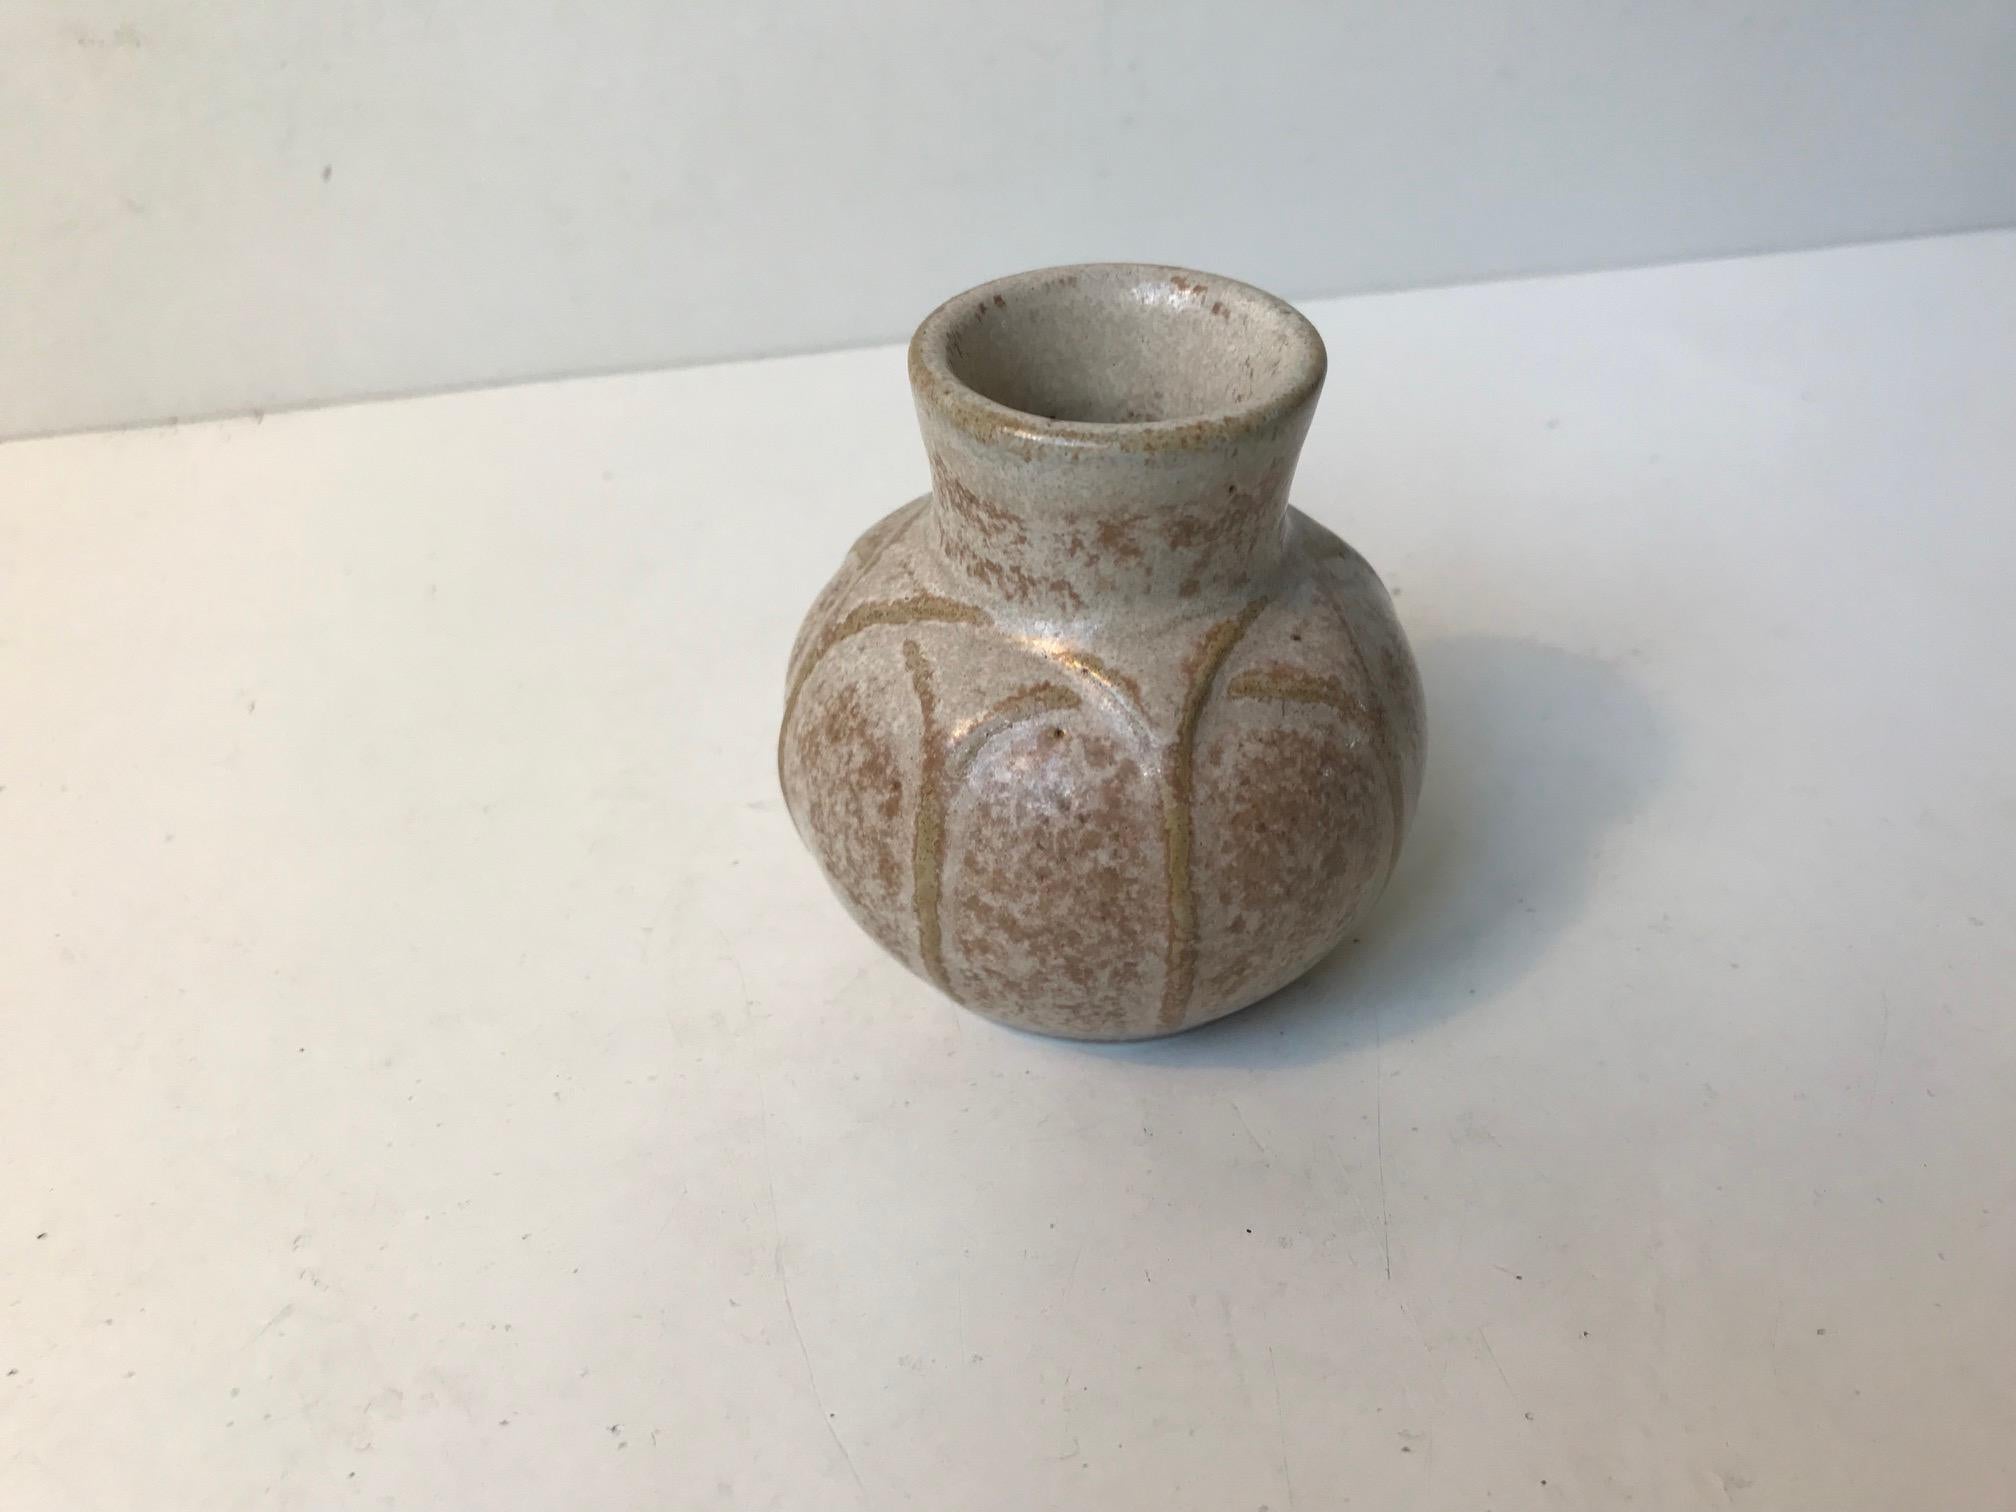 hjorth pottery